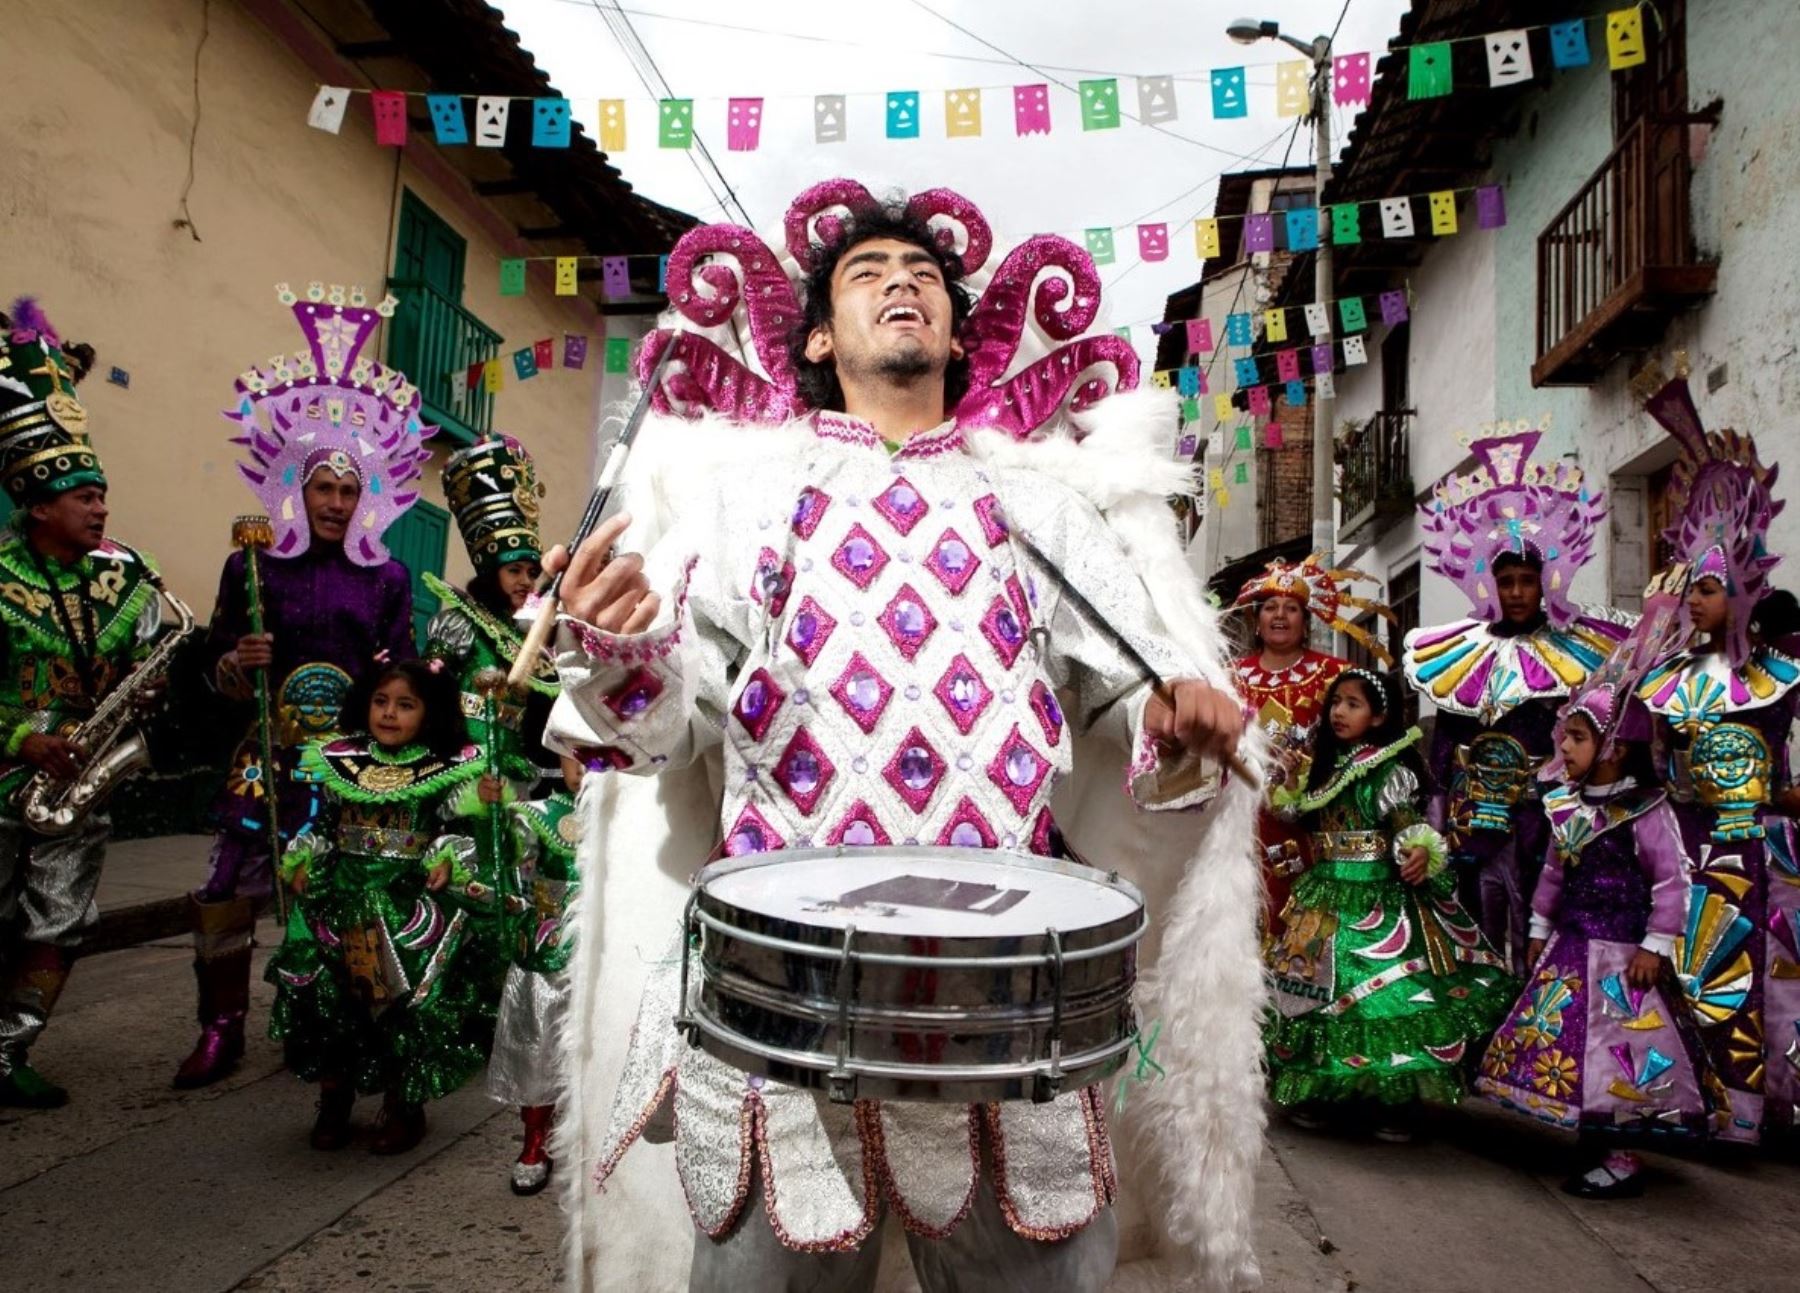 Cajamarca inicia actividad por el carnaval. Esta noche se realizará el tradicional pregón del carnaval y las comparsas desfilarán por las calles del centro histórico de esta ciudad. Foto: Eduard Lozano